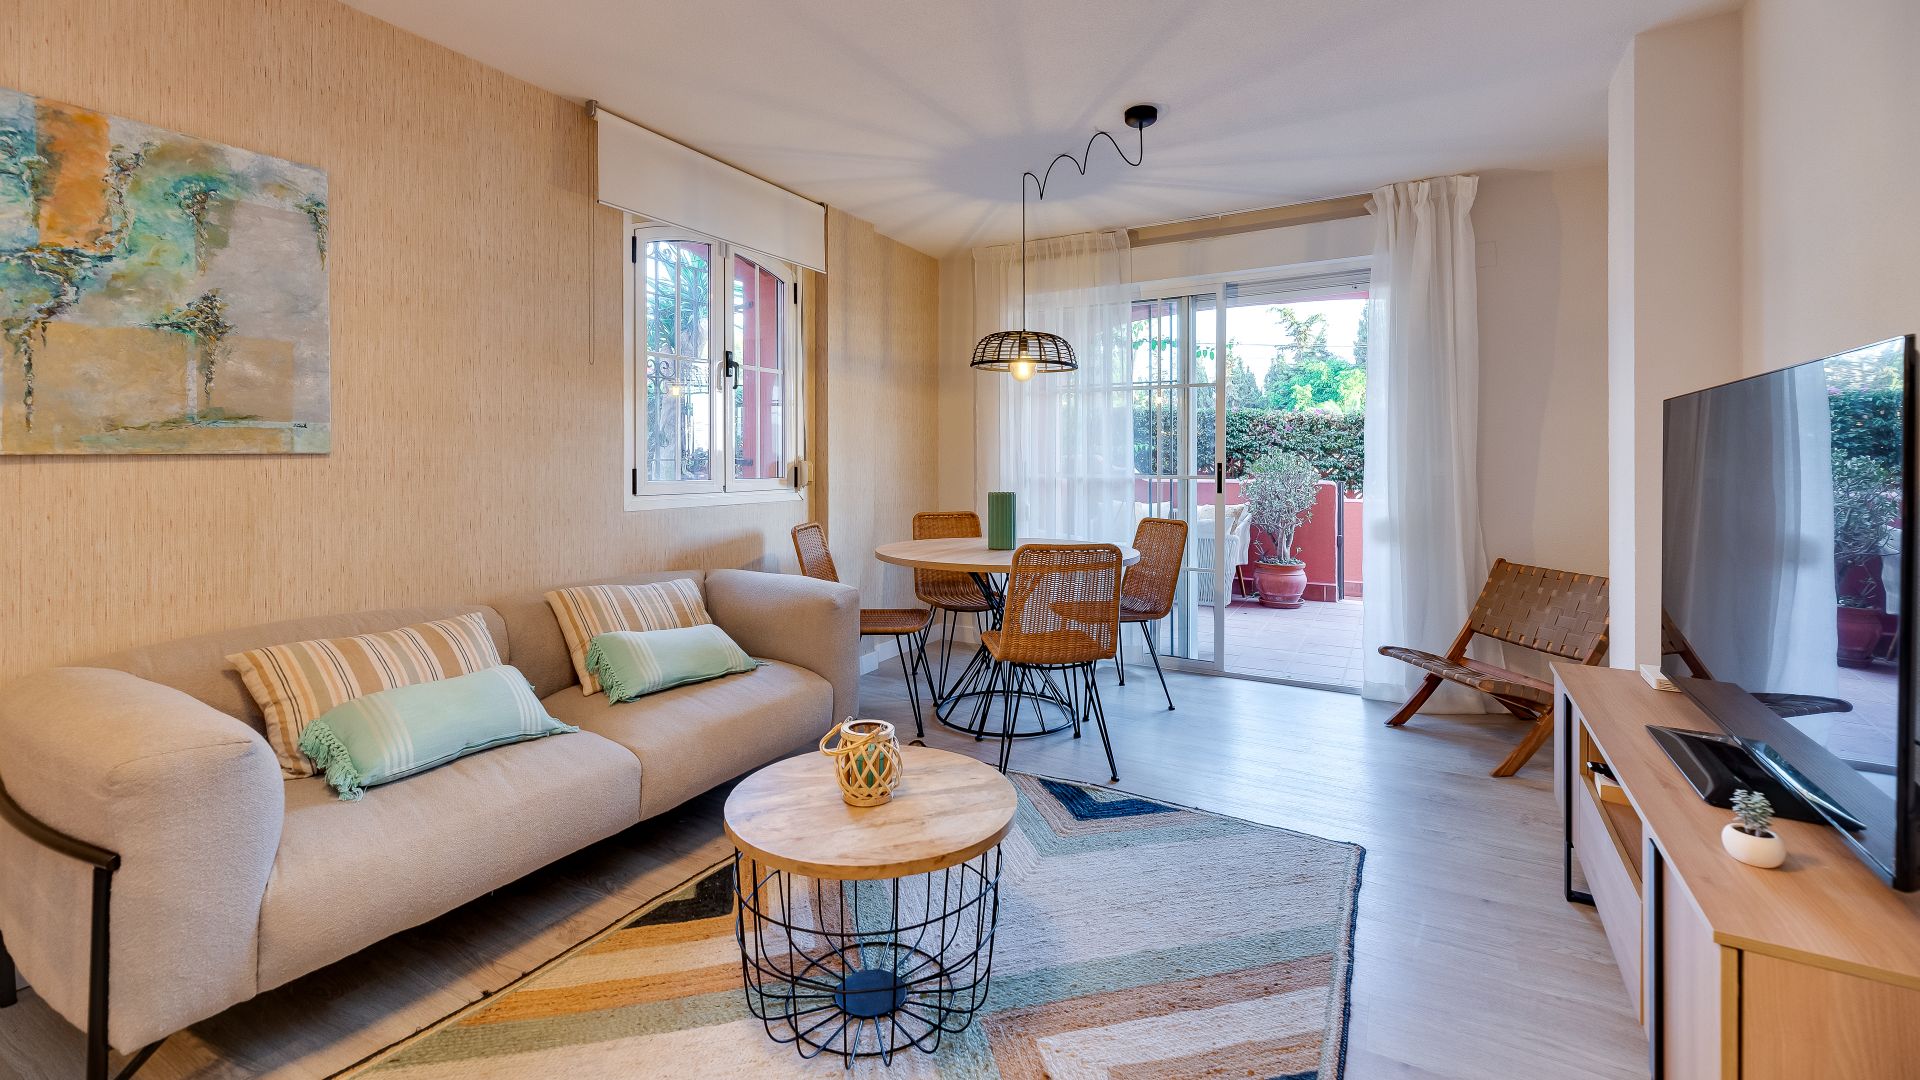 Luminoso y moderno apartamento junto a la playa | Engel & Völkers Marbella